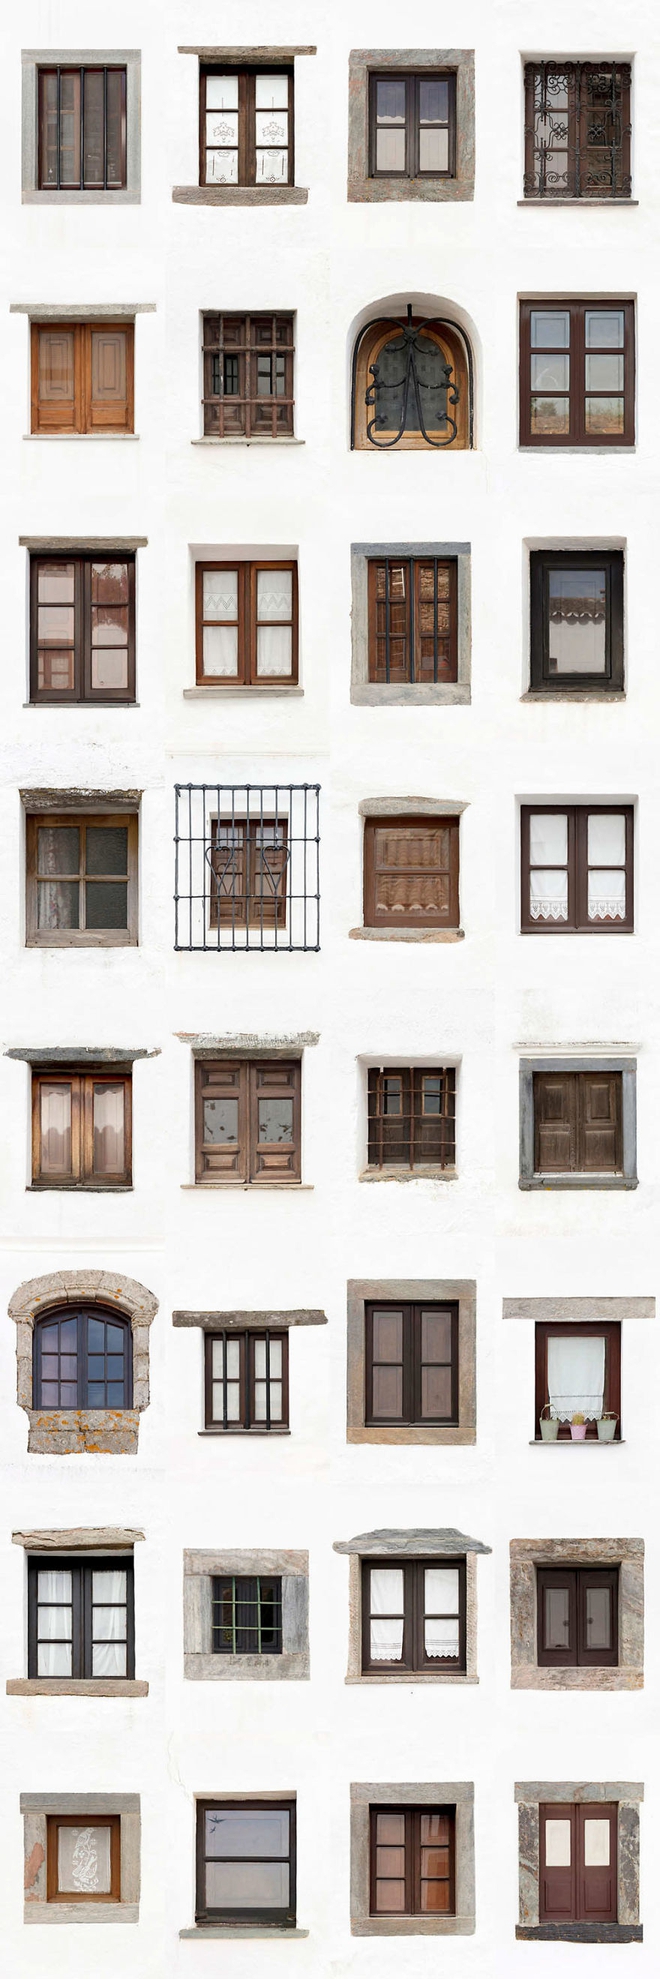 Mãn nhãn với 14 phong cách thiết kế cửa sổ khác nhau ở Bồ Đào Nha - Ảnh 27.